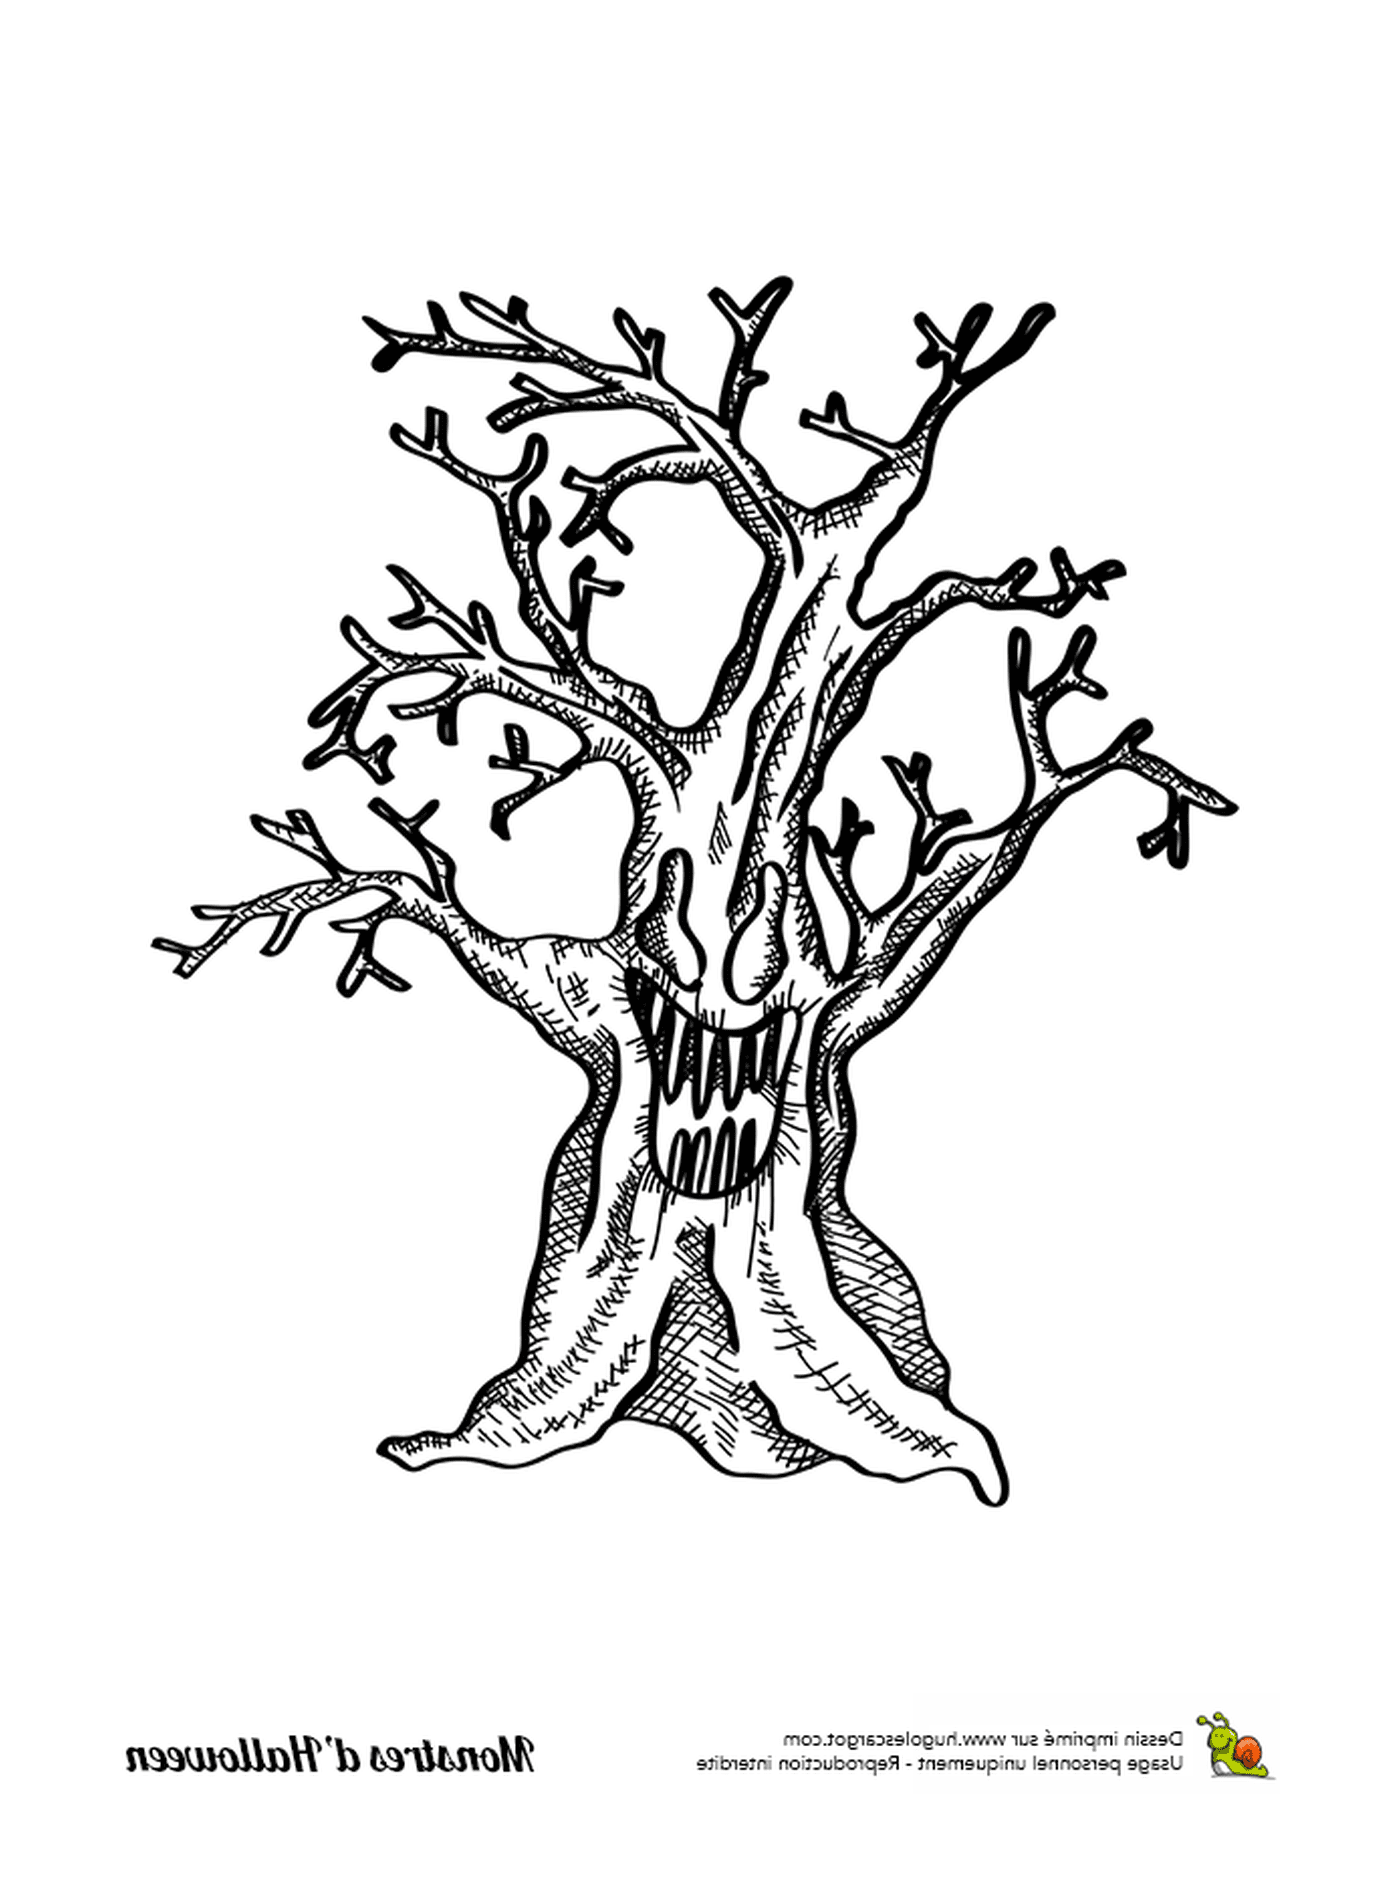  Eine Tinte, ein alter Baum ohne Blätter 